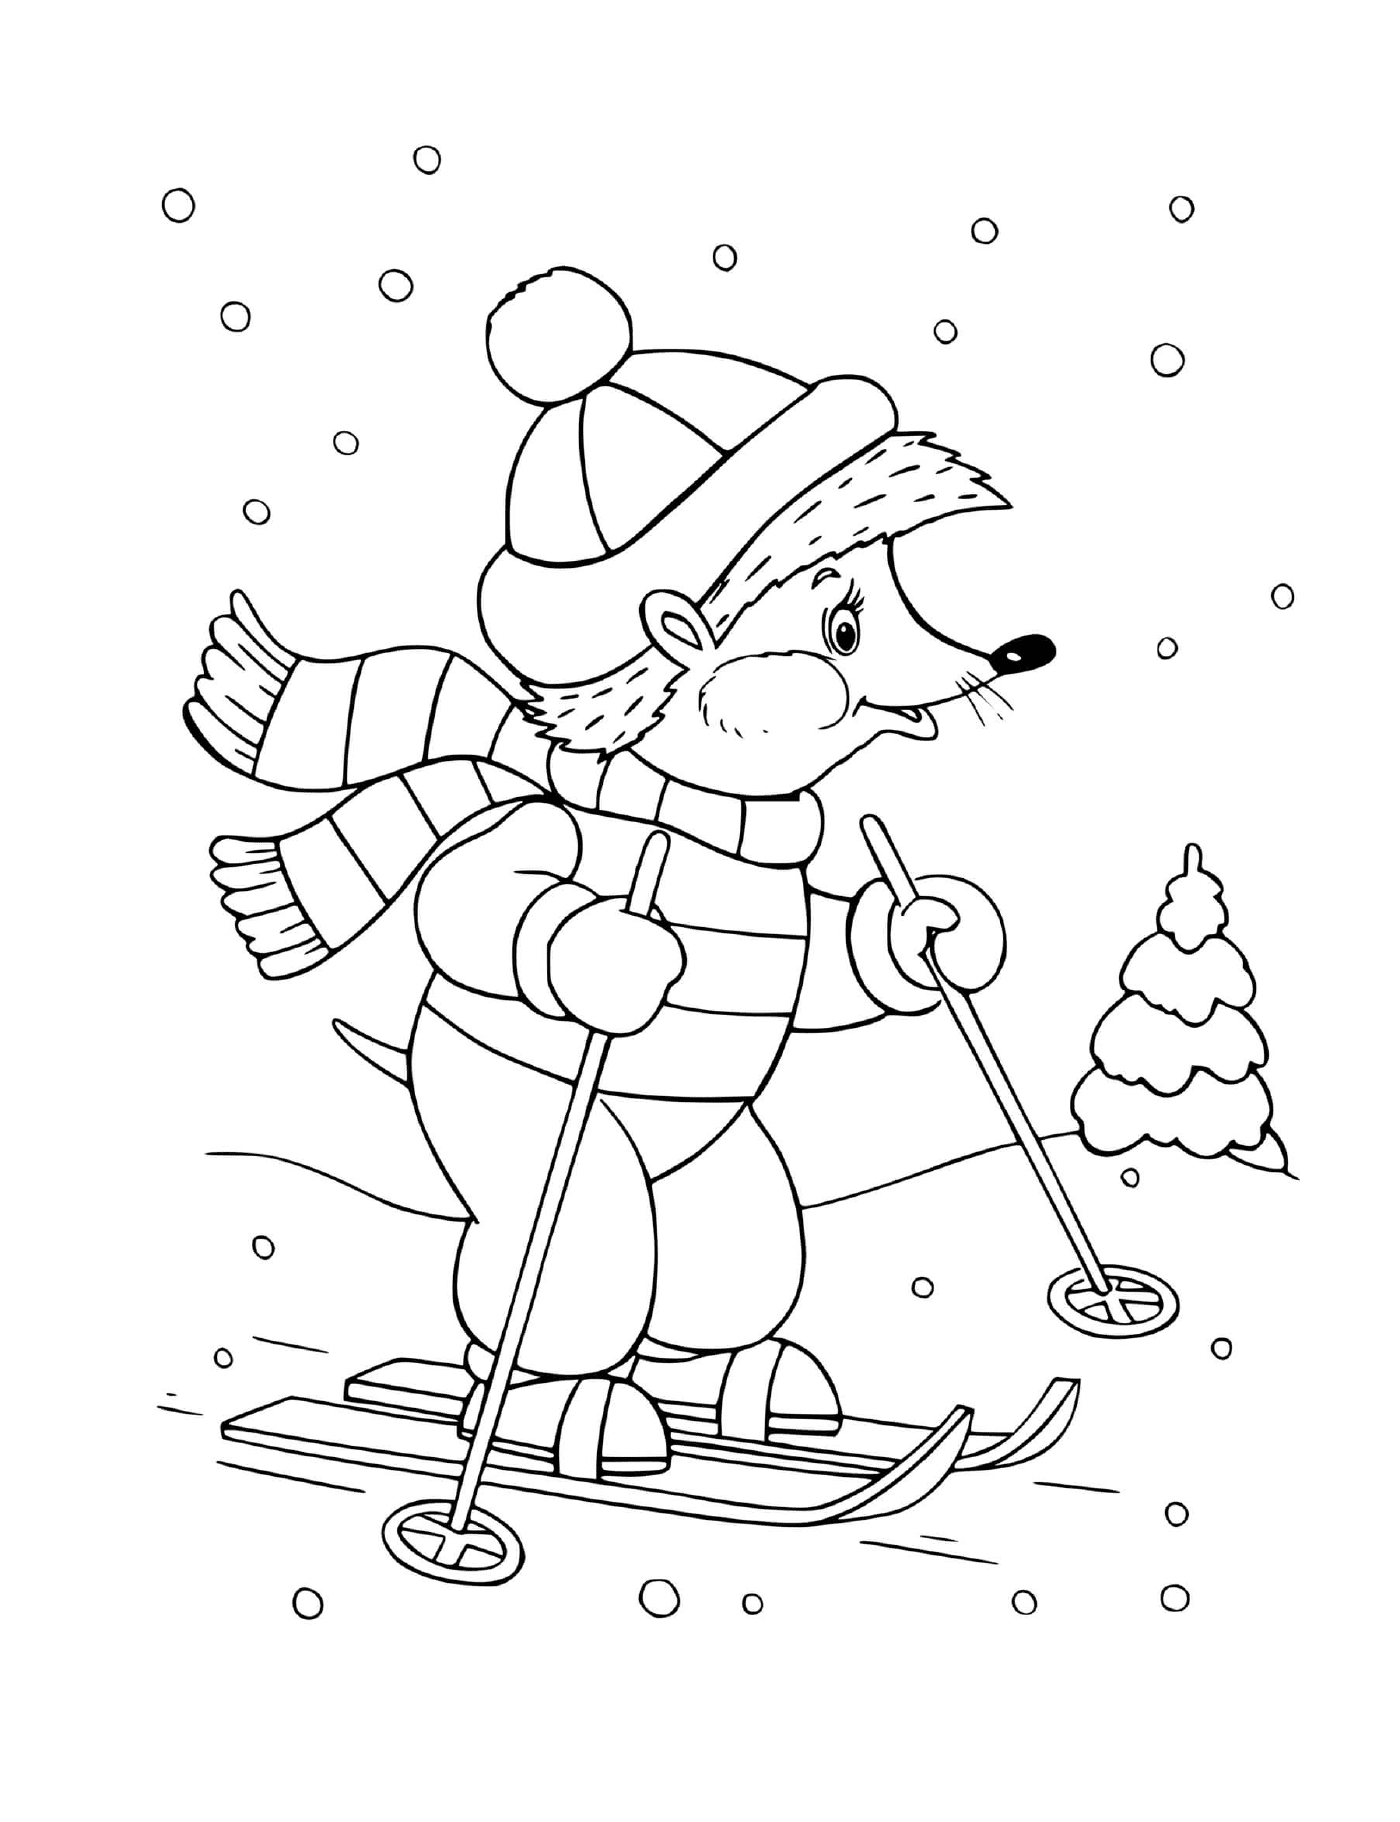  El oso esquiador esquiador habilidoso 